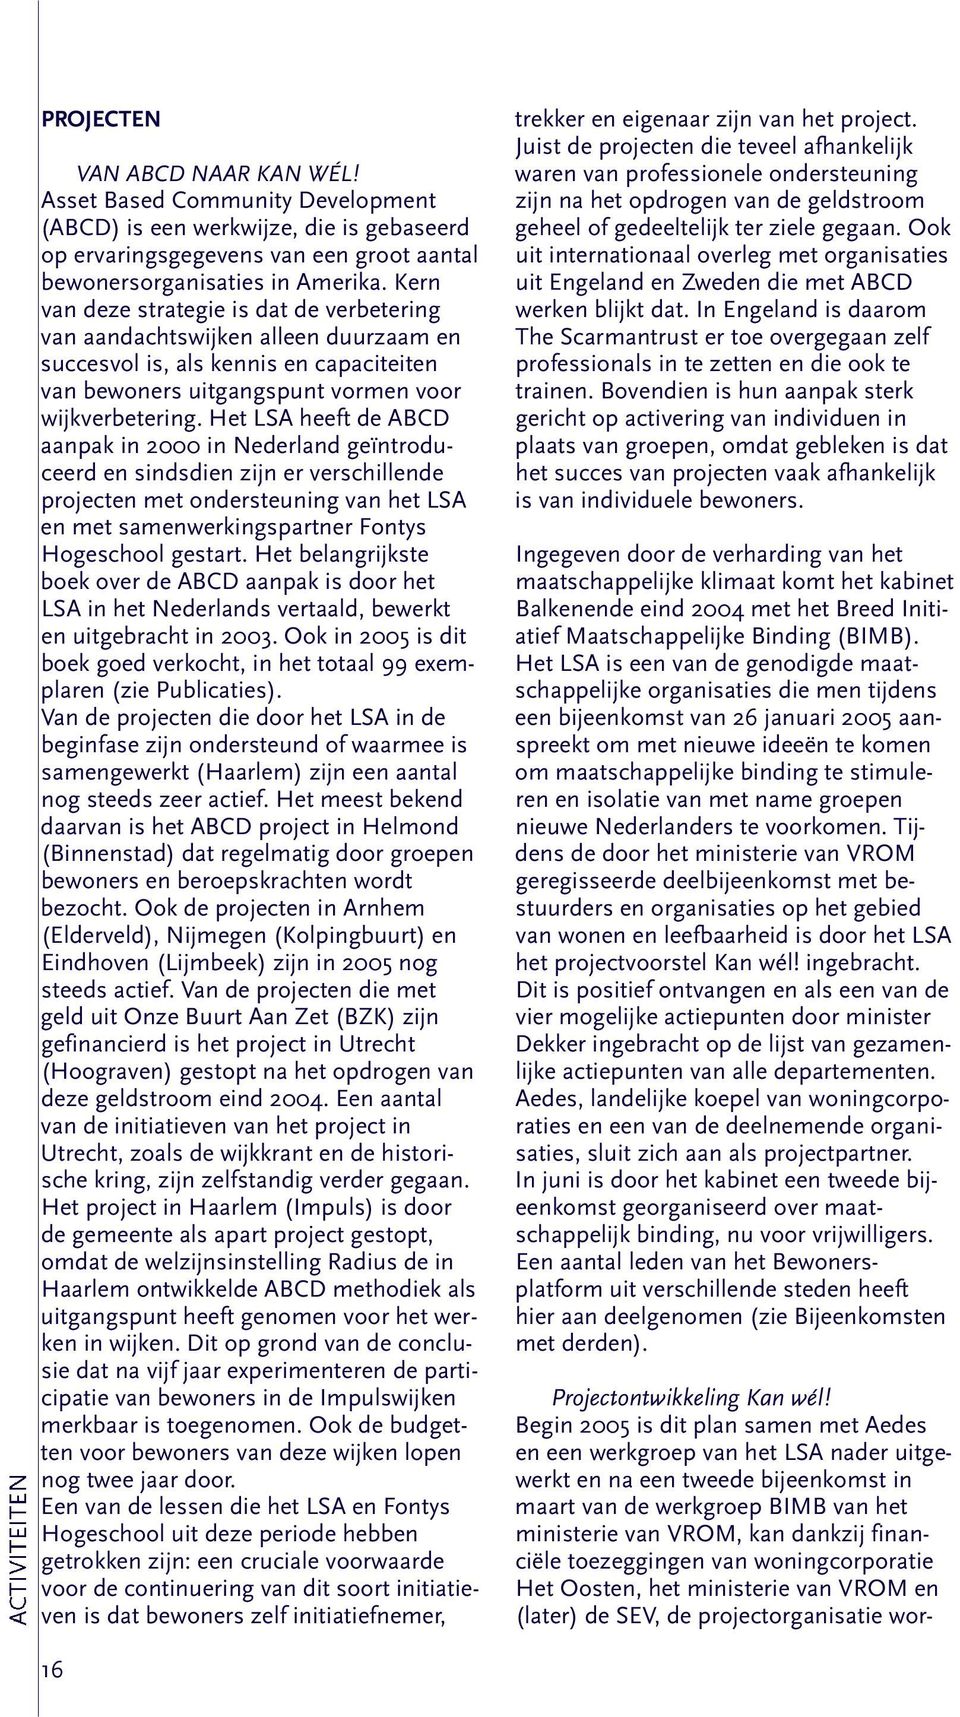 Het LSA heeft de ABCD aanpak in 2000 in Nederland geïntroduceerd en sindsdien zijn er verschillende projecten met ondersteuning van het LSA en met samenwerkingspartner Fontys Hogeschool gestart.